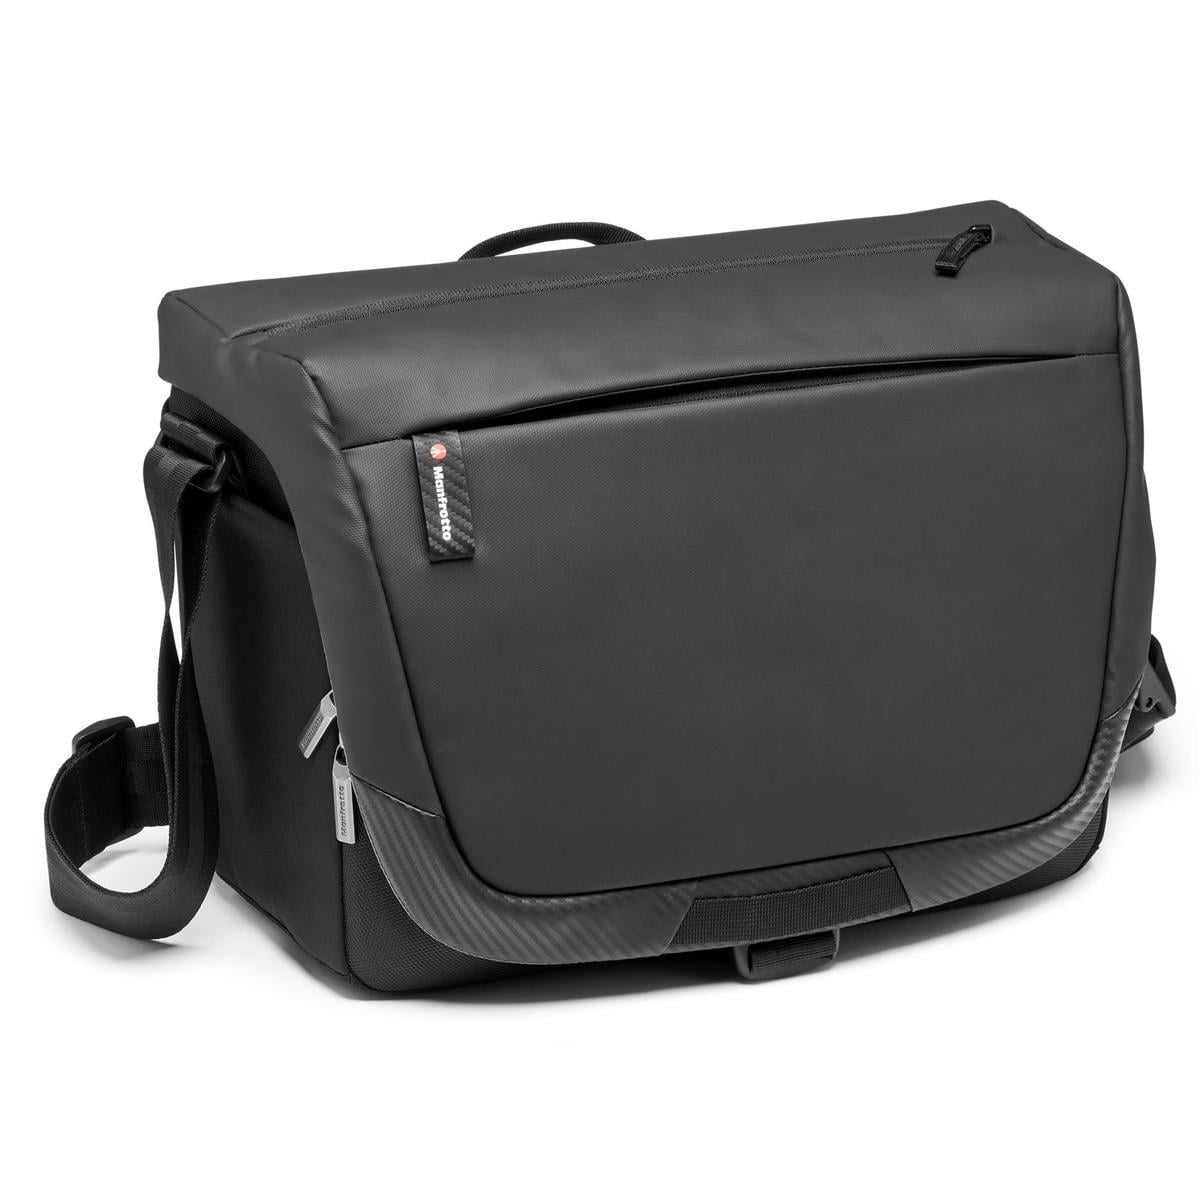 Manfrotto Advanced Shoulder Bag for DSLR/CSC Camera, 14" Laptop Compartment, Medium, - Walmart.com